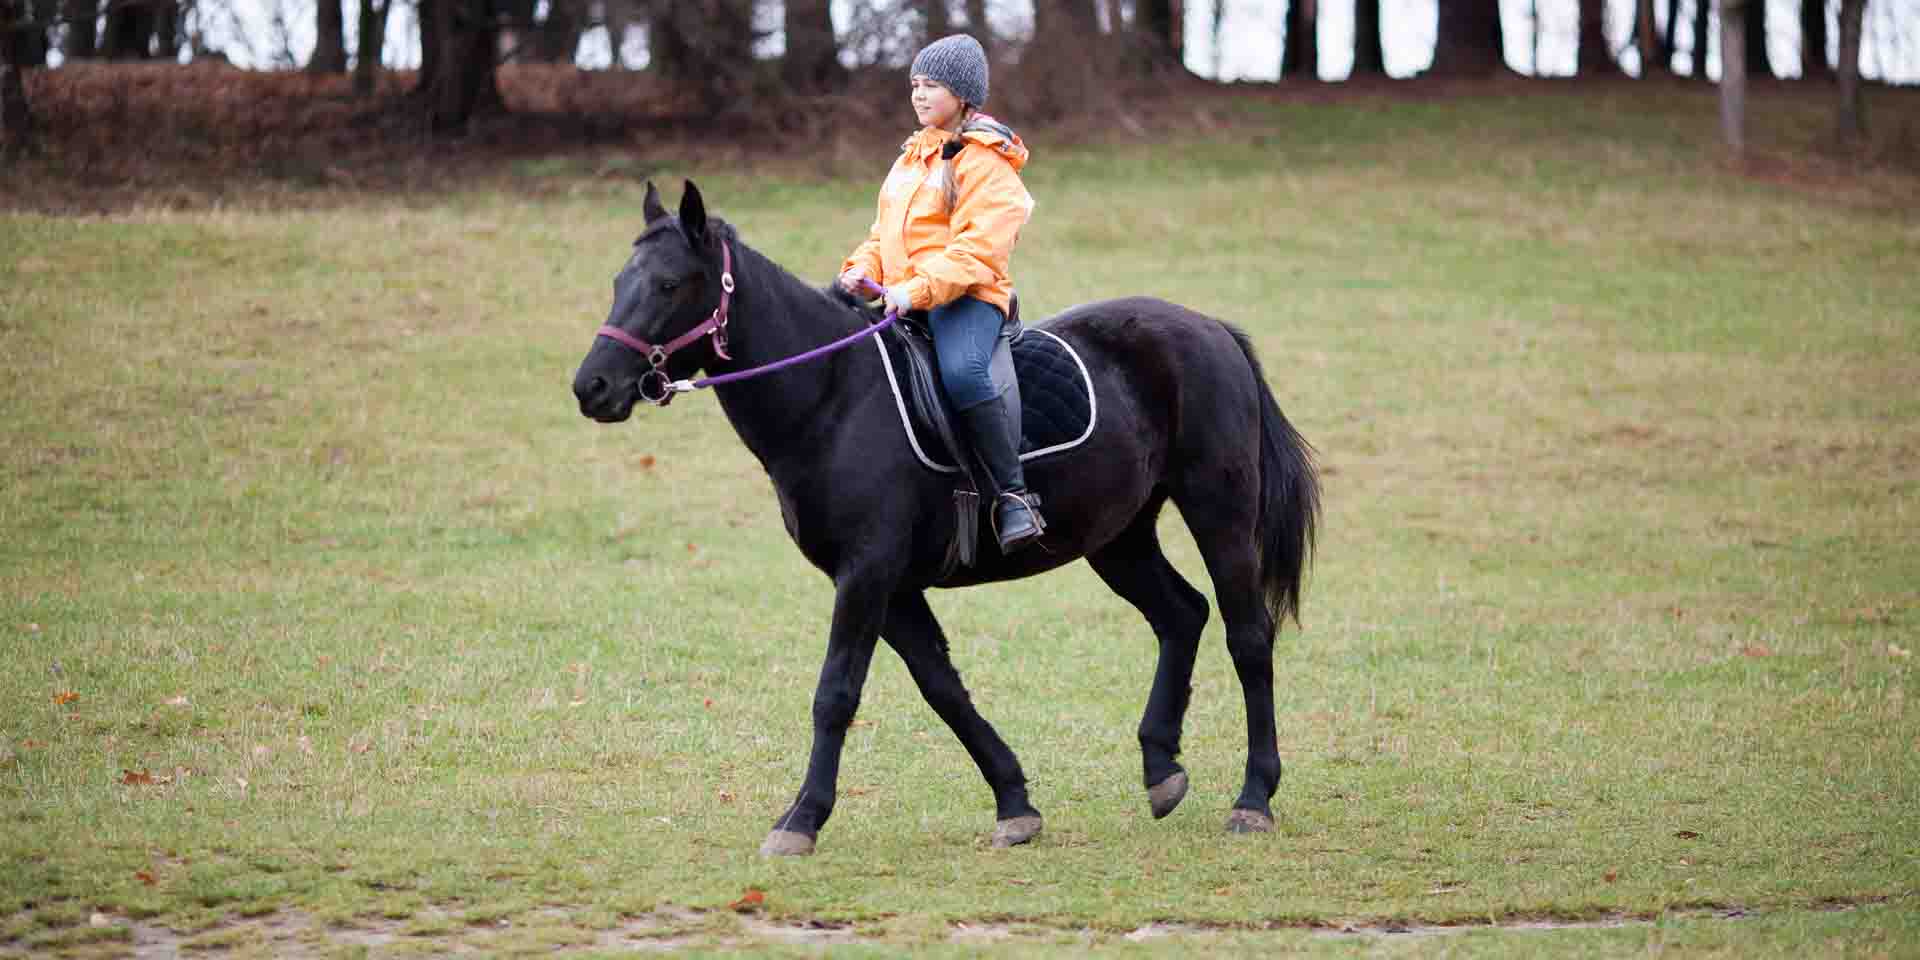 Girl riding a horse.